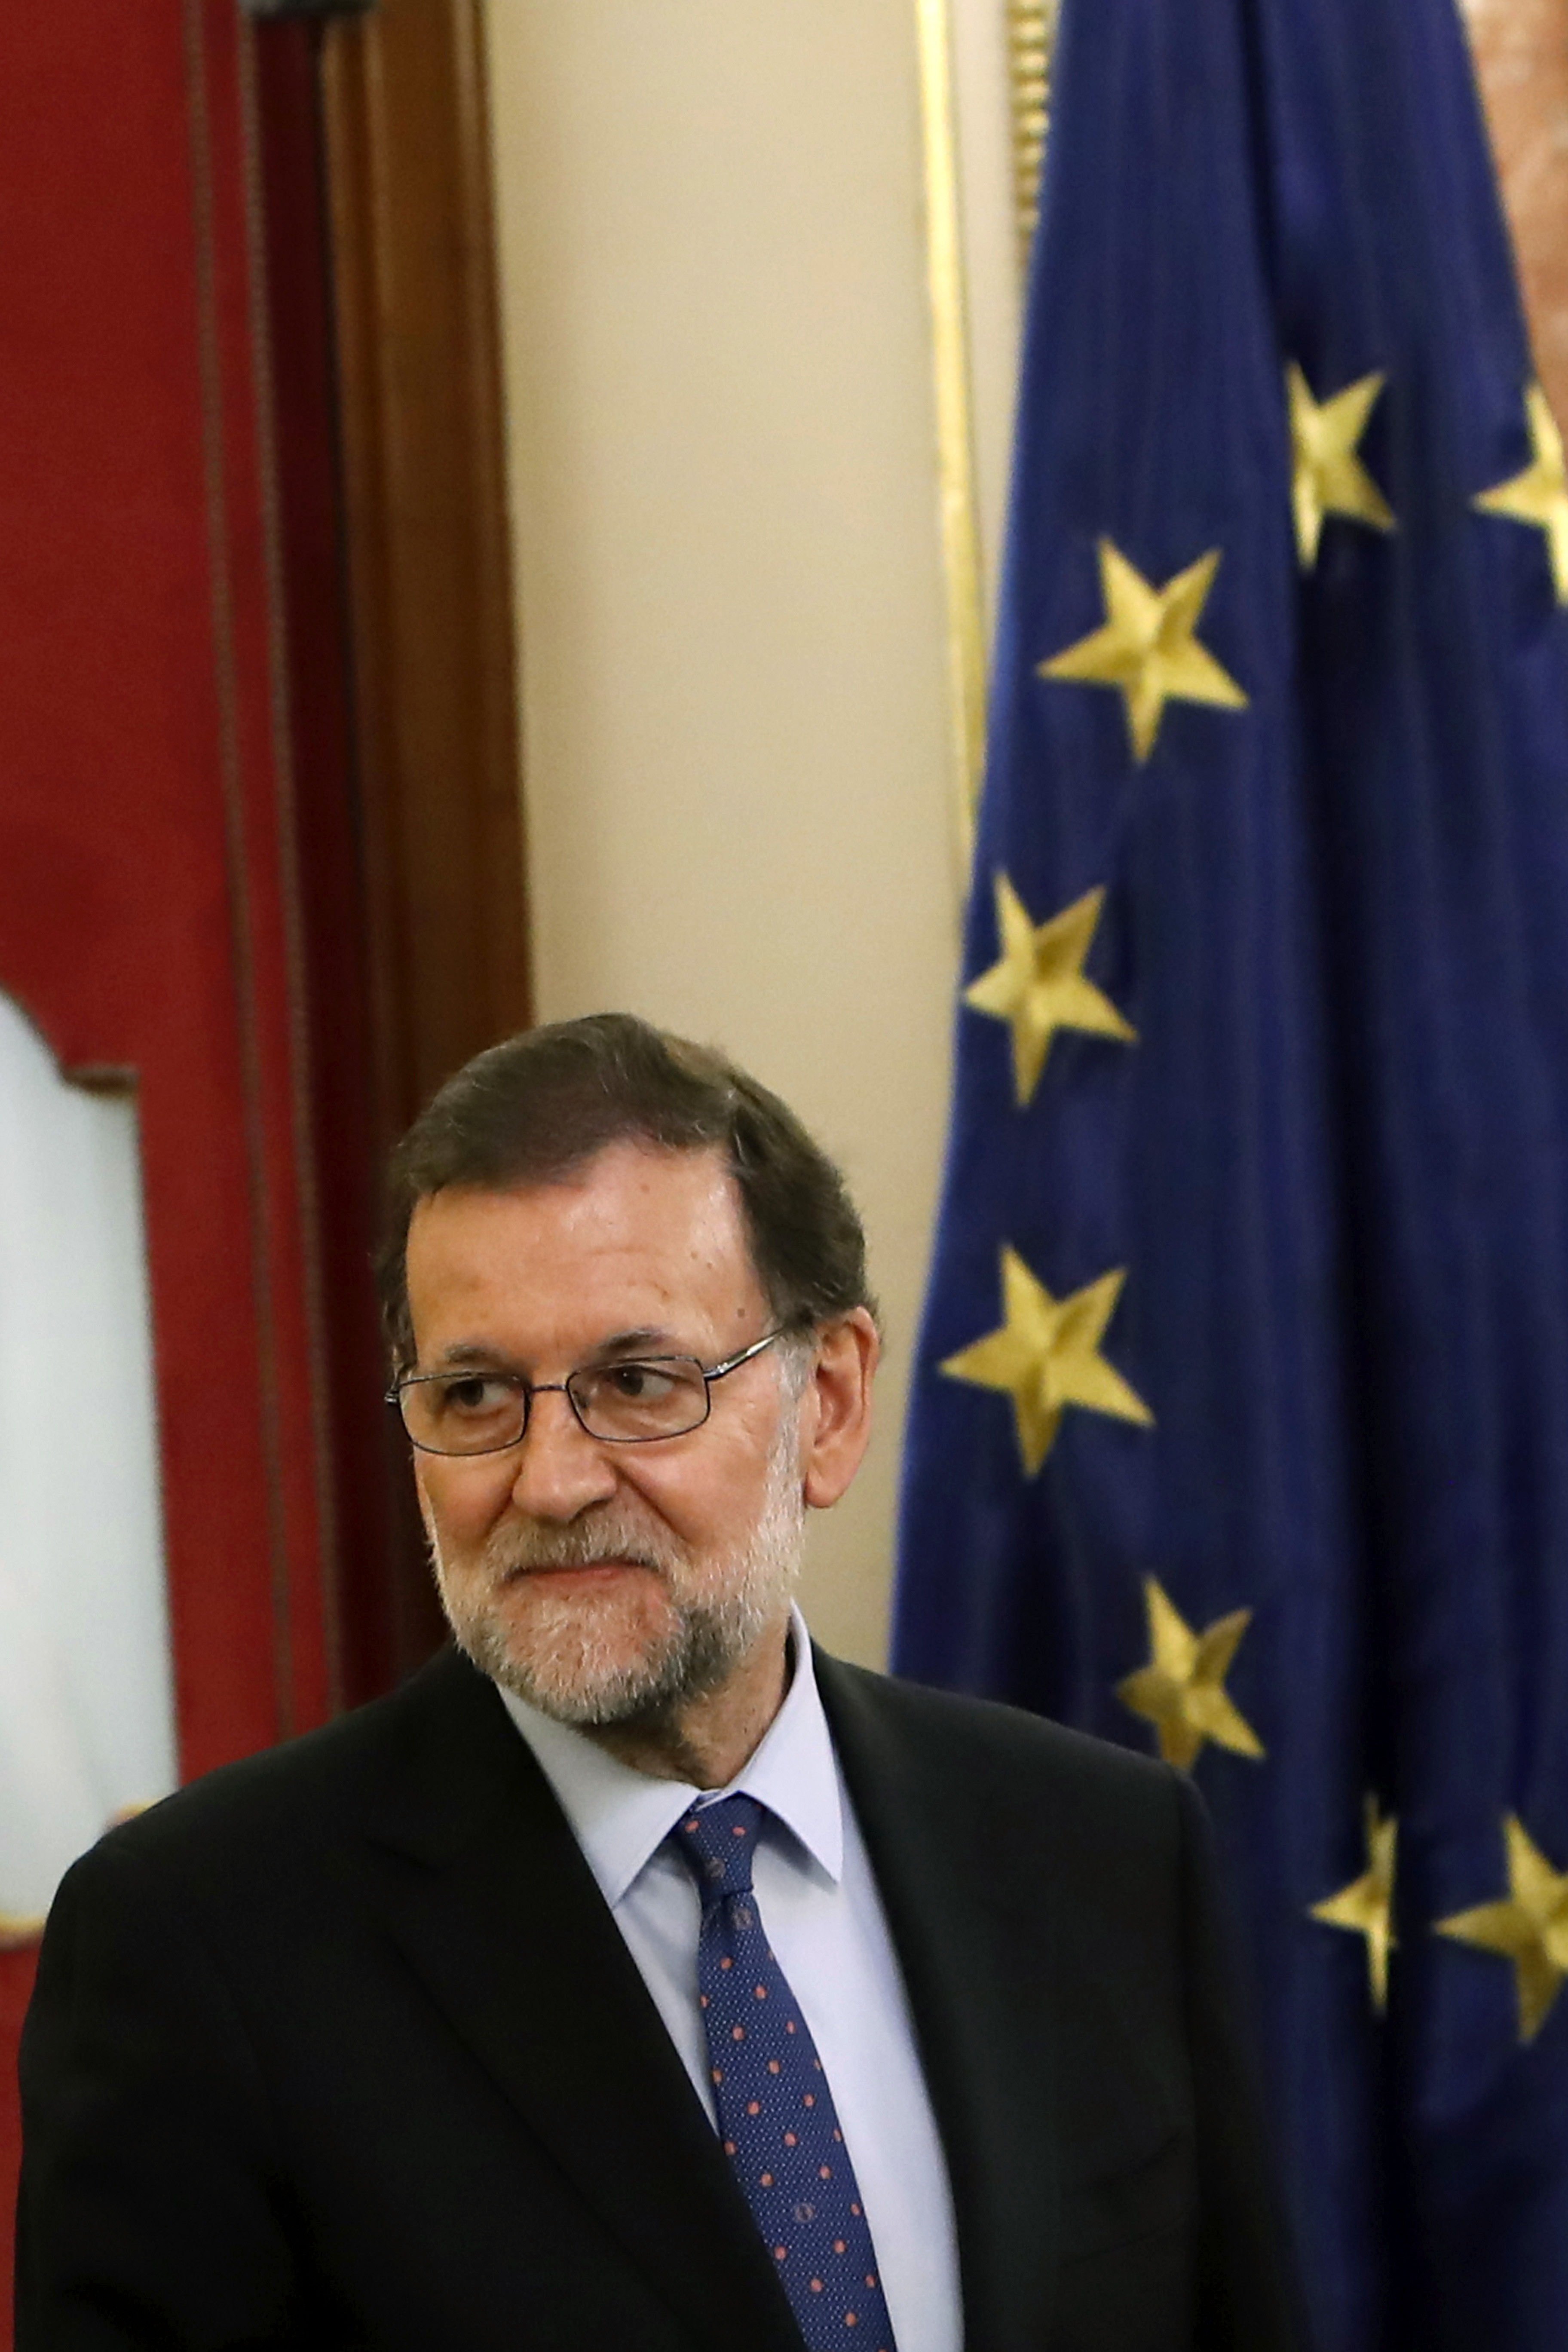 La reacción del Gobierno español: ve un fracaso el acto de los alcaldes